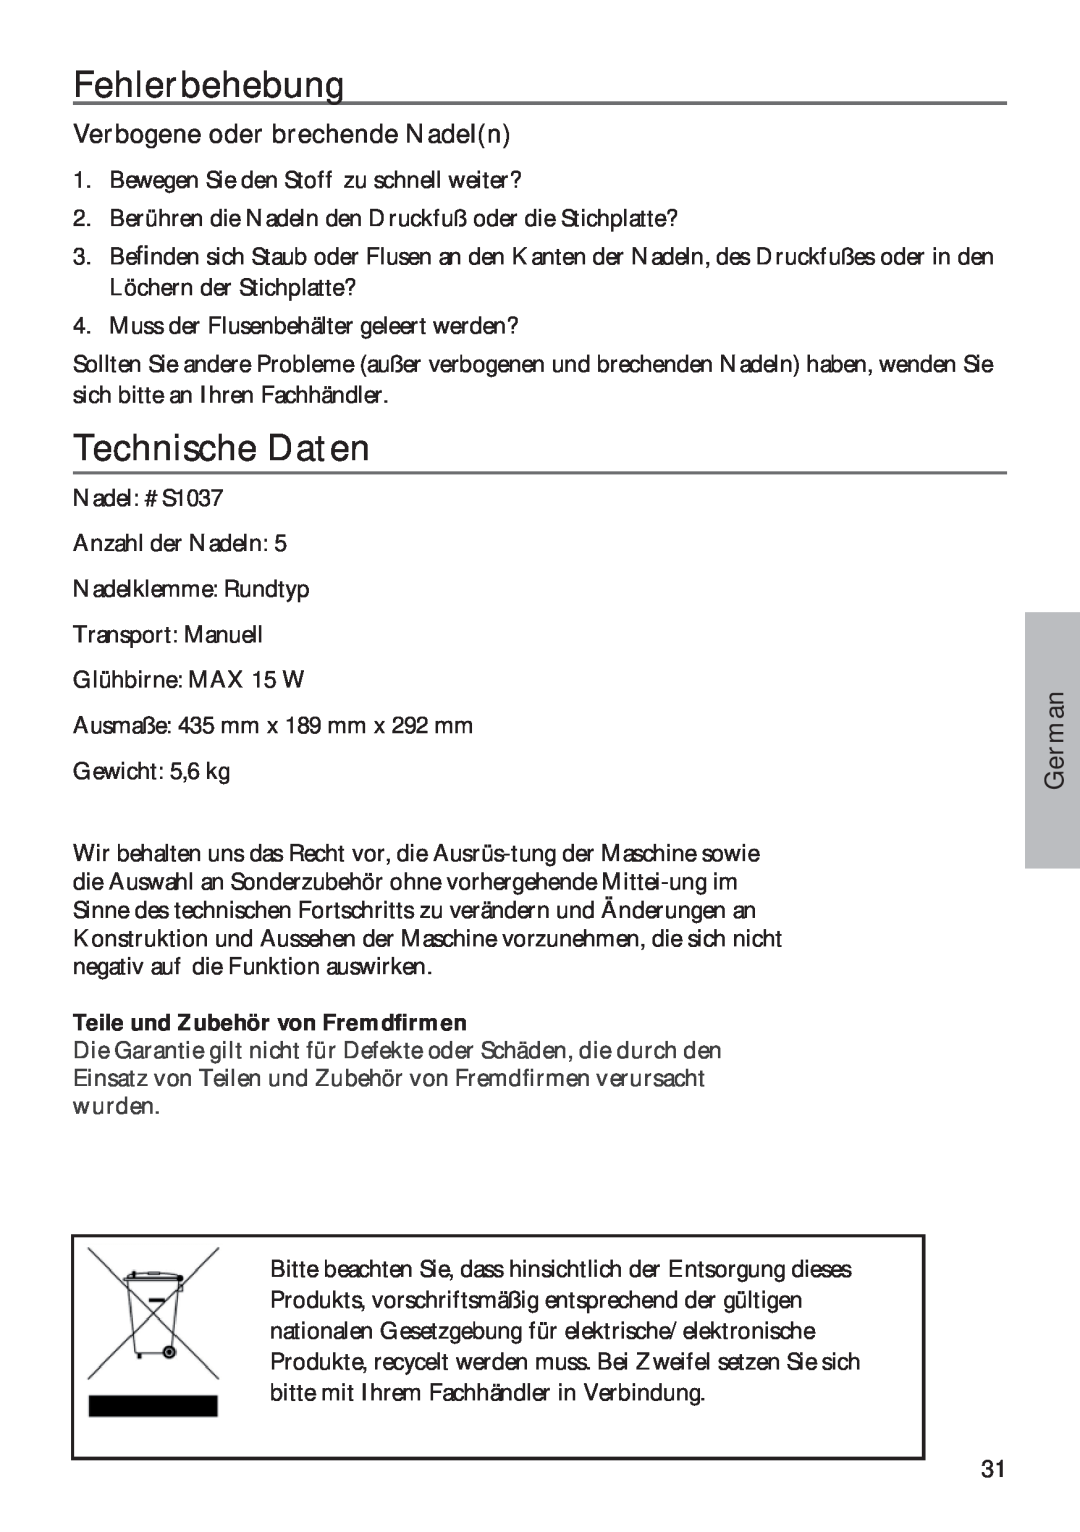 Pfaff 350P owner manual Fehlerbehebung, Technische Daten, Verbogene oder brechende Nadeln, German 